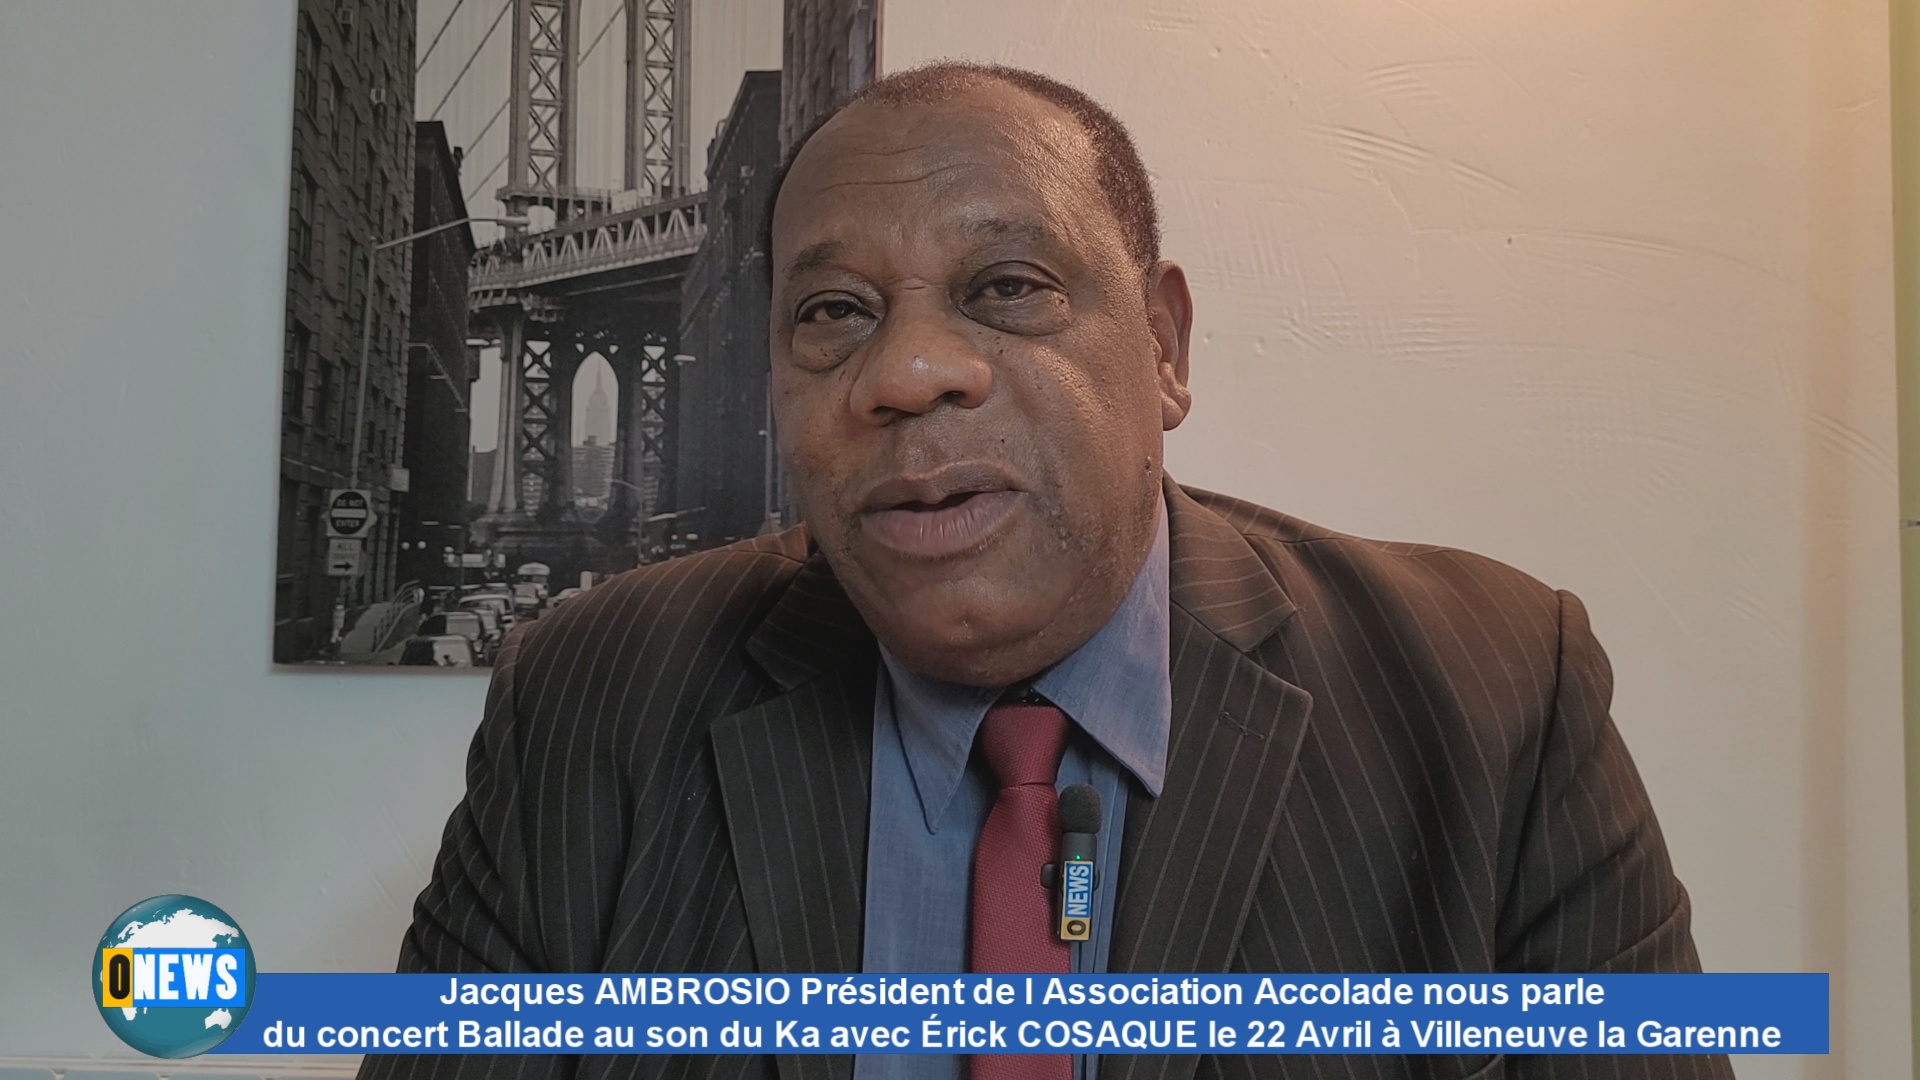 [Vidéo] Jacques AMBROSIO Président de l association Accolade parle du Concert Ballade au son du Ka  le 22 Avril à Villeneuve la Garenne avec Érick Cosaque